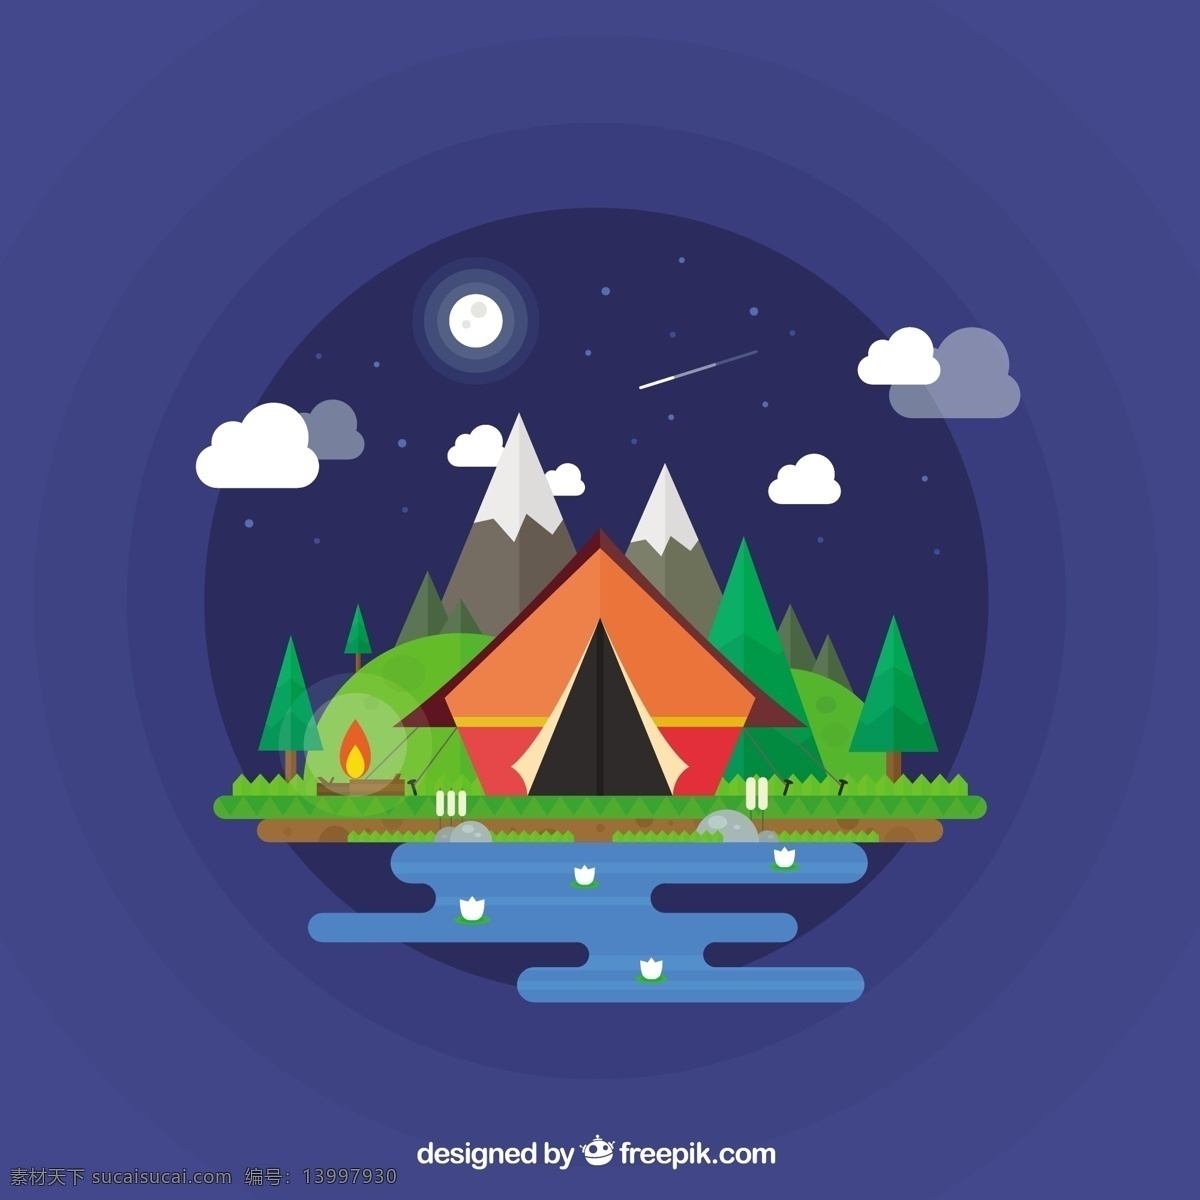 一个 美妙 夜晚 露营 帐篷 自然 山地 森林 月球 夜间 河 山 营 探险 户外 松 登山 体验 乡村 攀登 装备 星空 精彩 蓝色